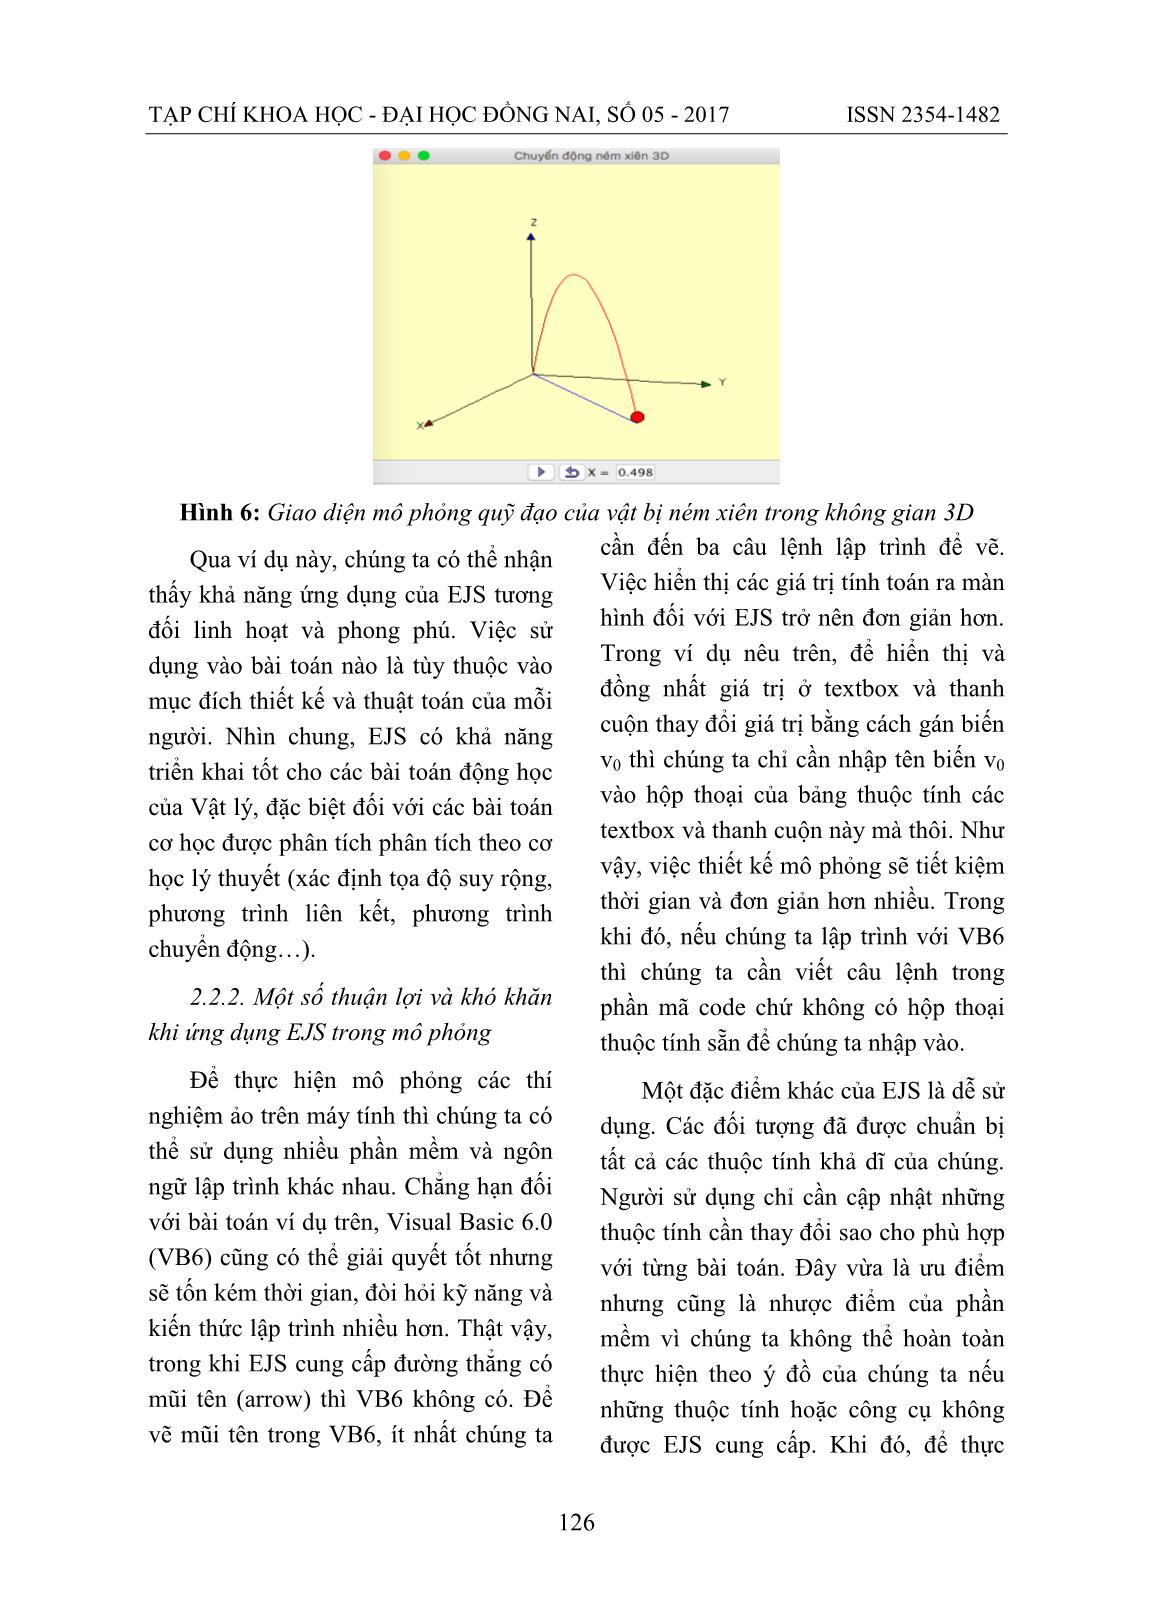 Thí nghiệm vật lý ảo với Easy Java Simulation trang 7